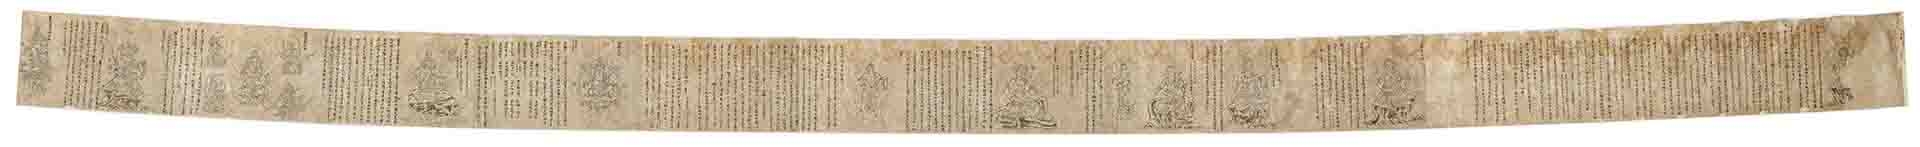 日本 镰仓时代 不动仪轨白描书卷纸本(奈良)30x1232